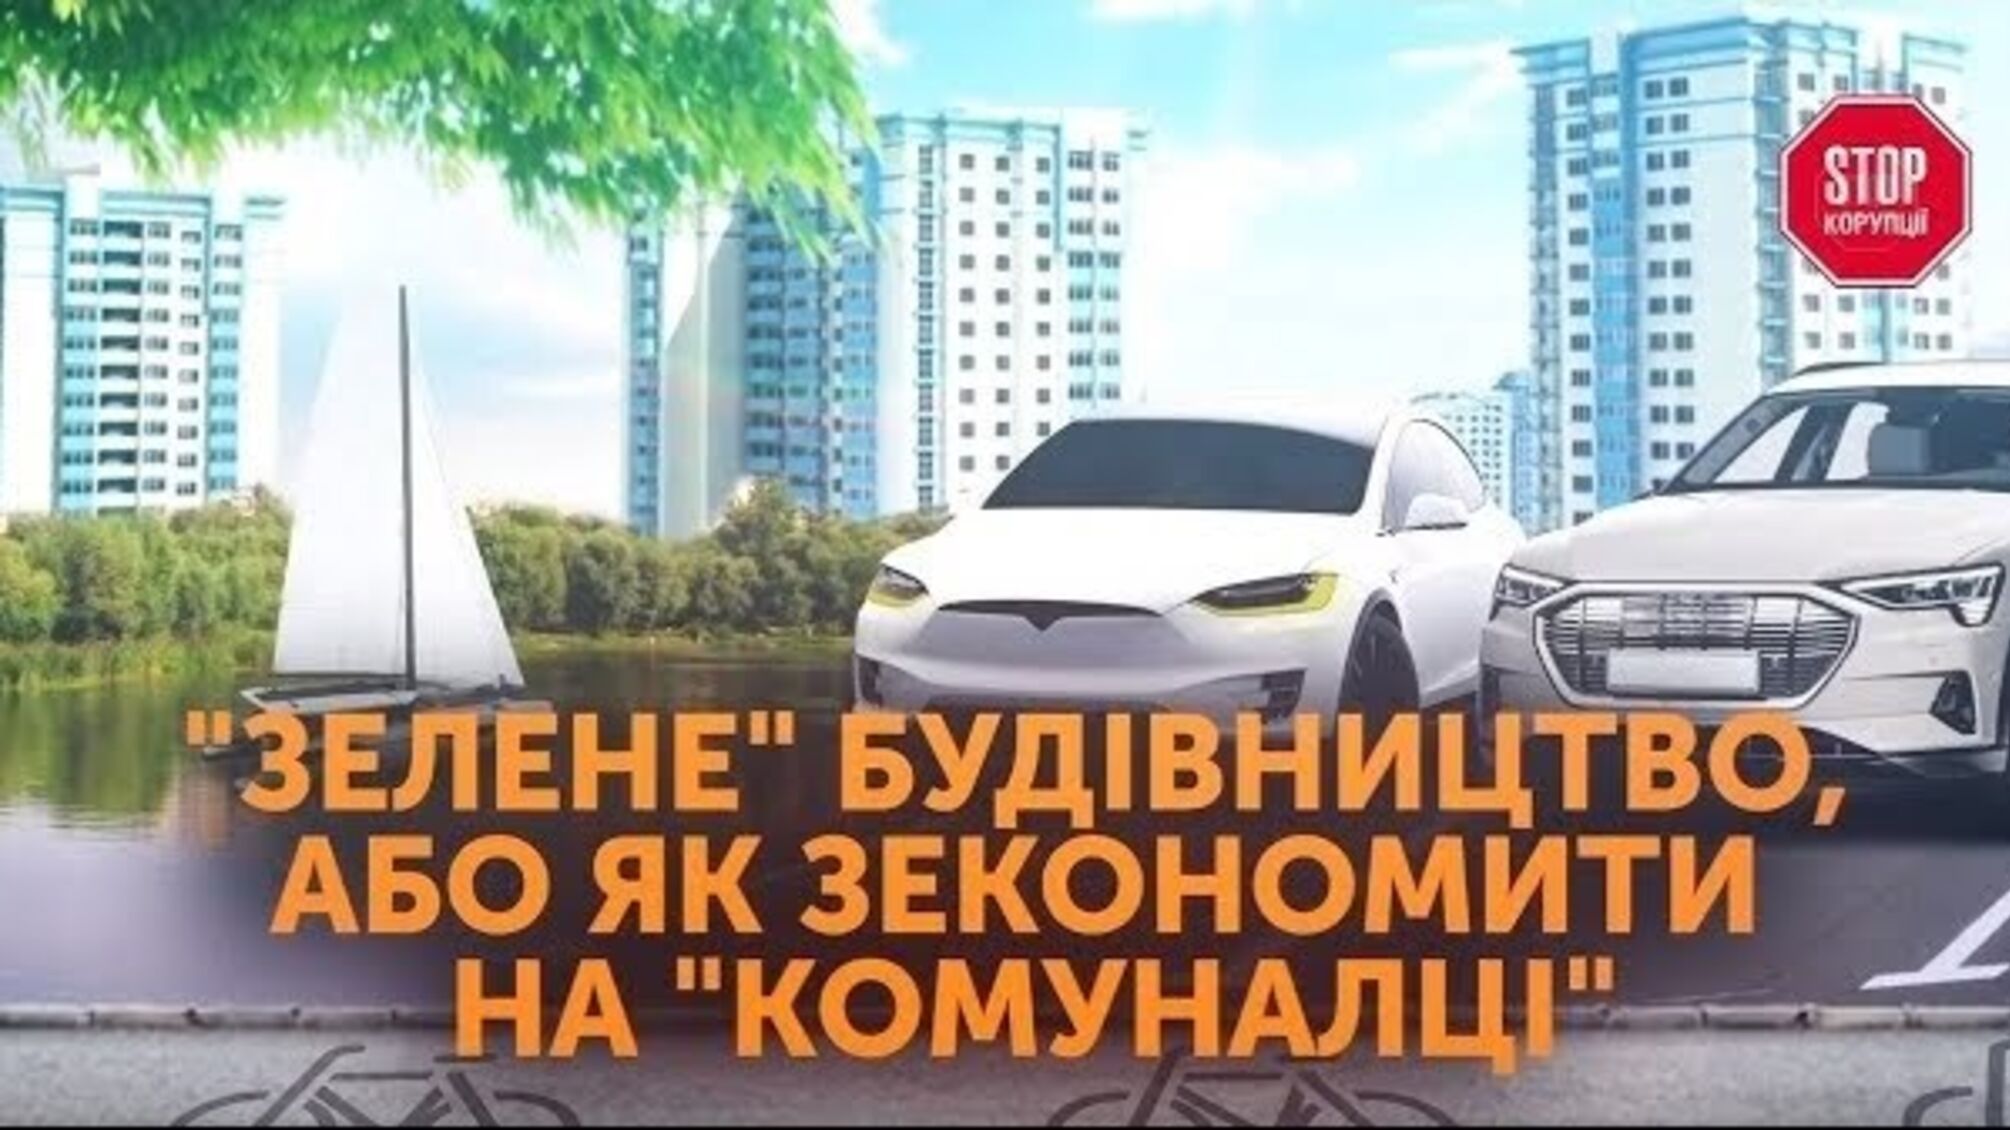 'Зелене' будівництво: в Києві будують екологічний житловий комплекс